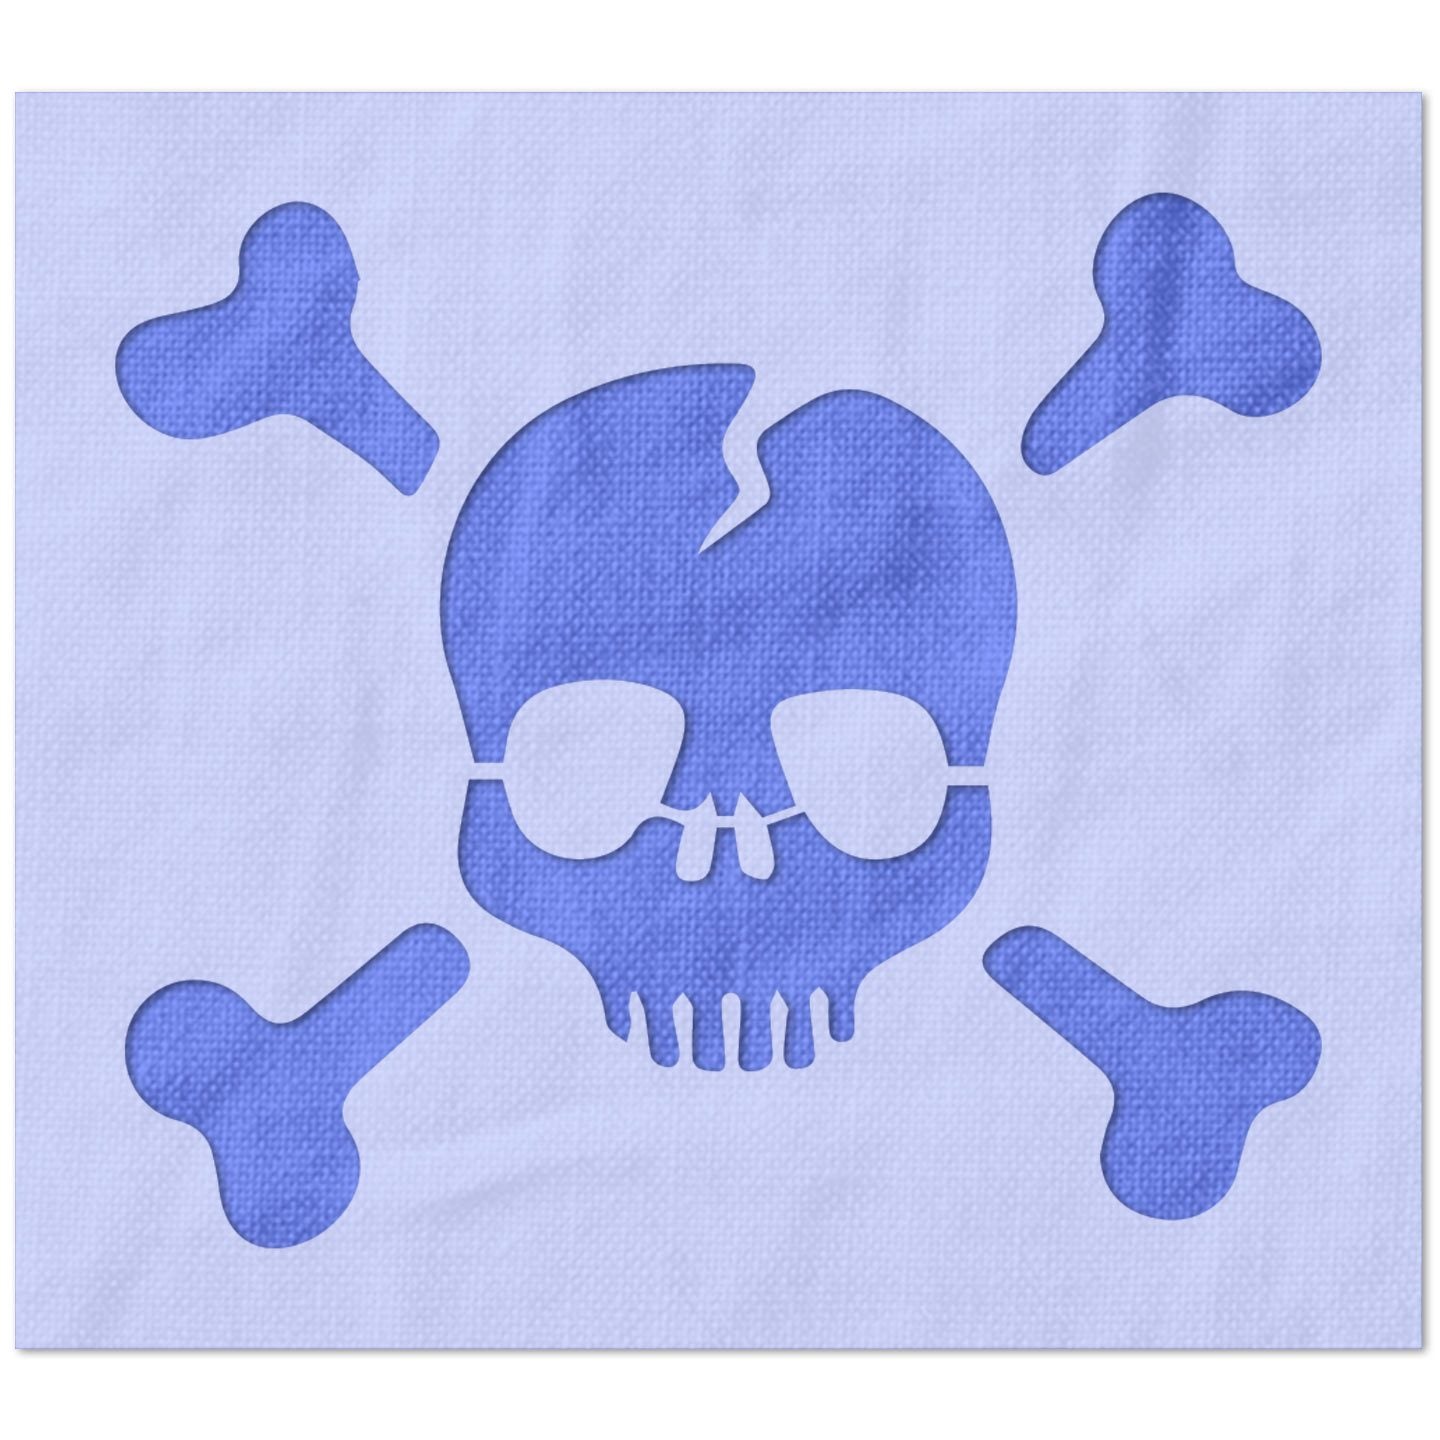 Skull and Crossbones Design Stencil